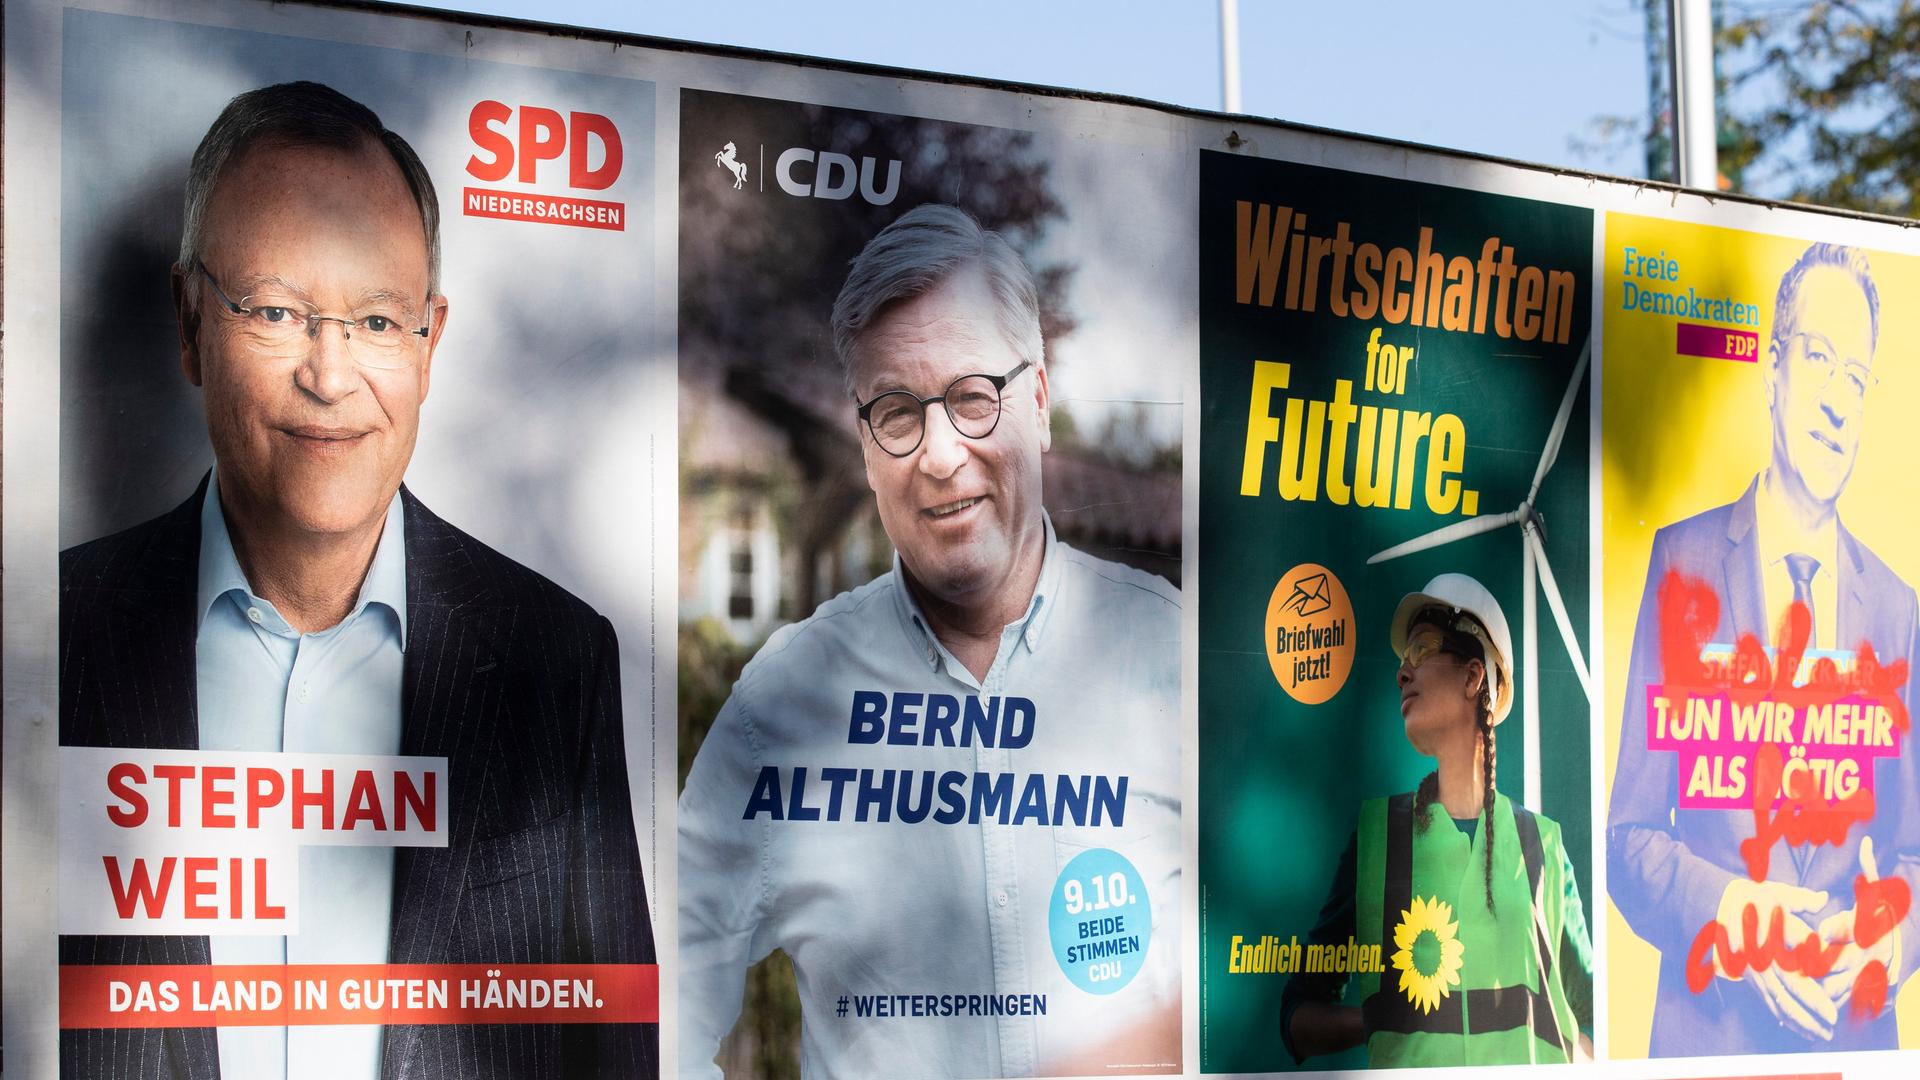 An einer HauptstraÃe in Hannover sind Wahlplakate der SPD, CDU, den Grünen und der FDP aufgestellt